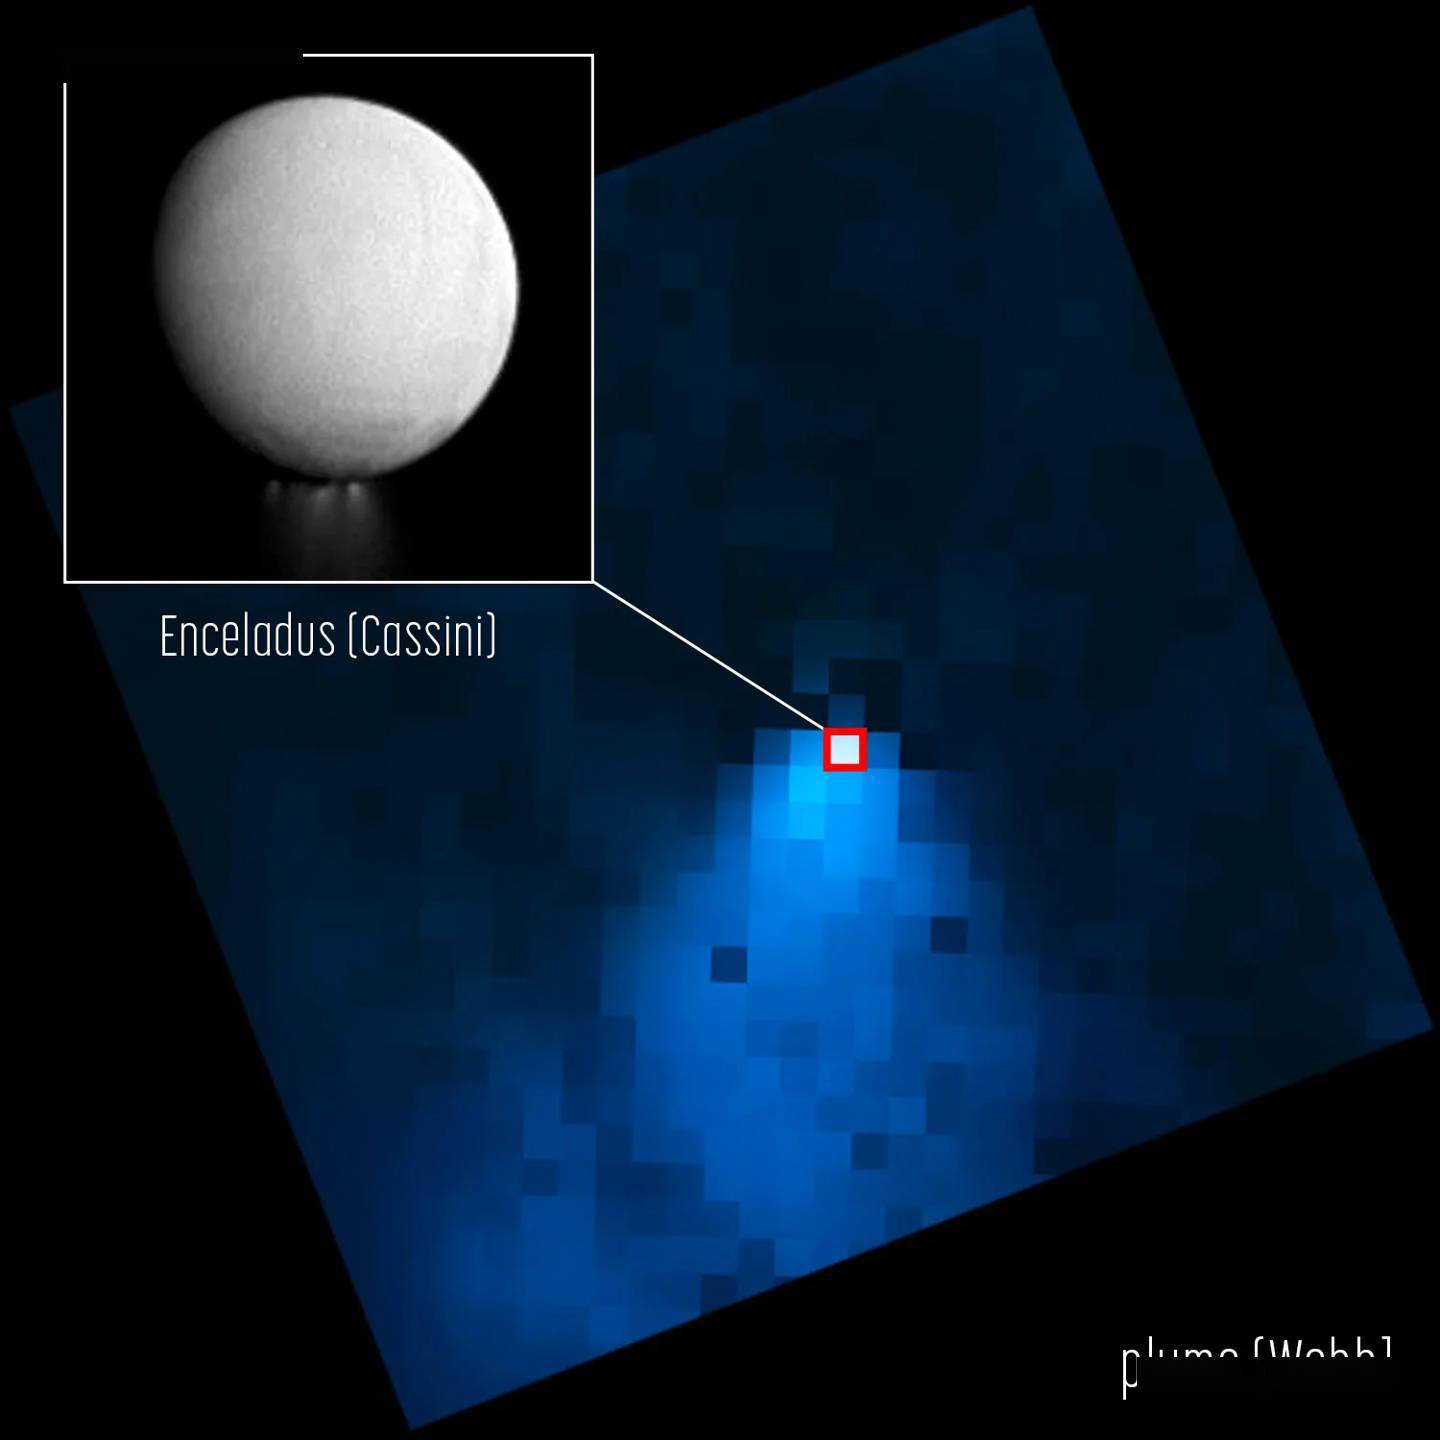 消息称天文学家在深入观测土卫二“恩克拉多斯”后，认为能在上面找到外星生命证据